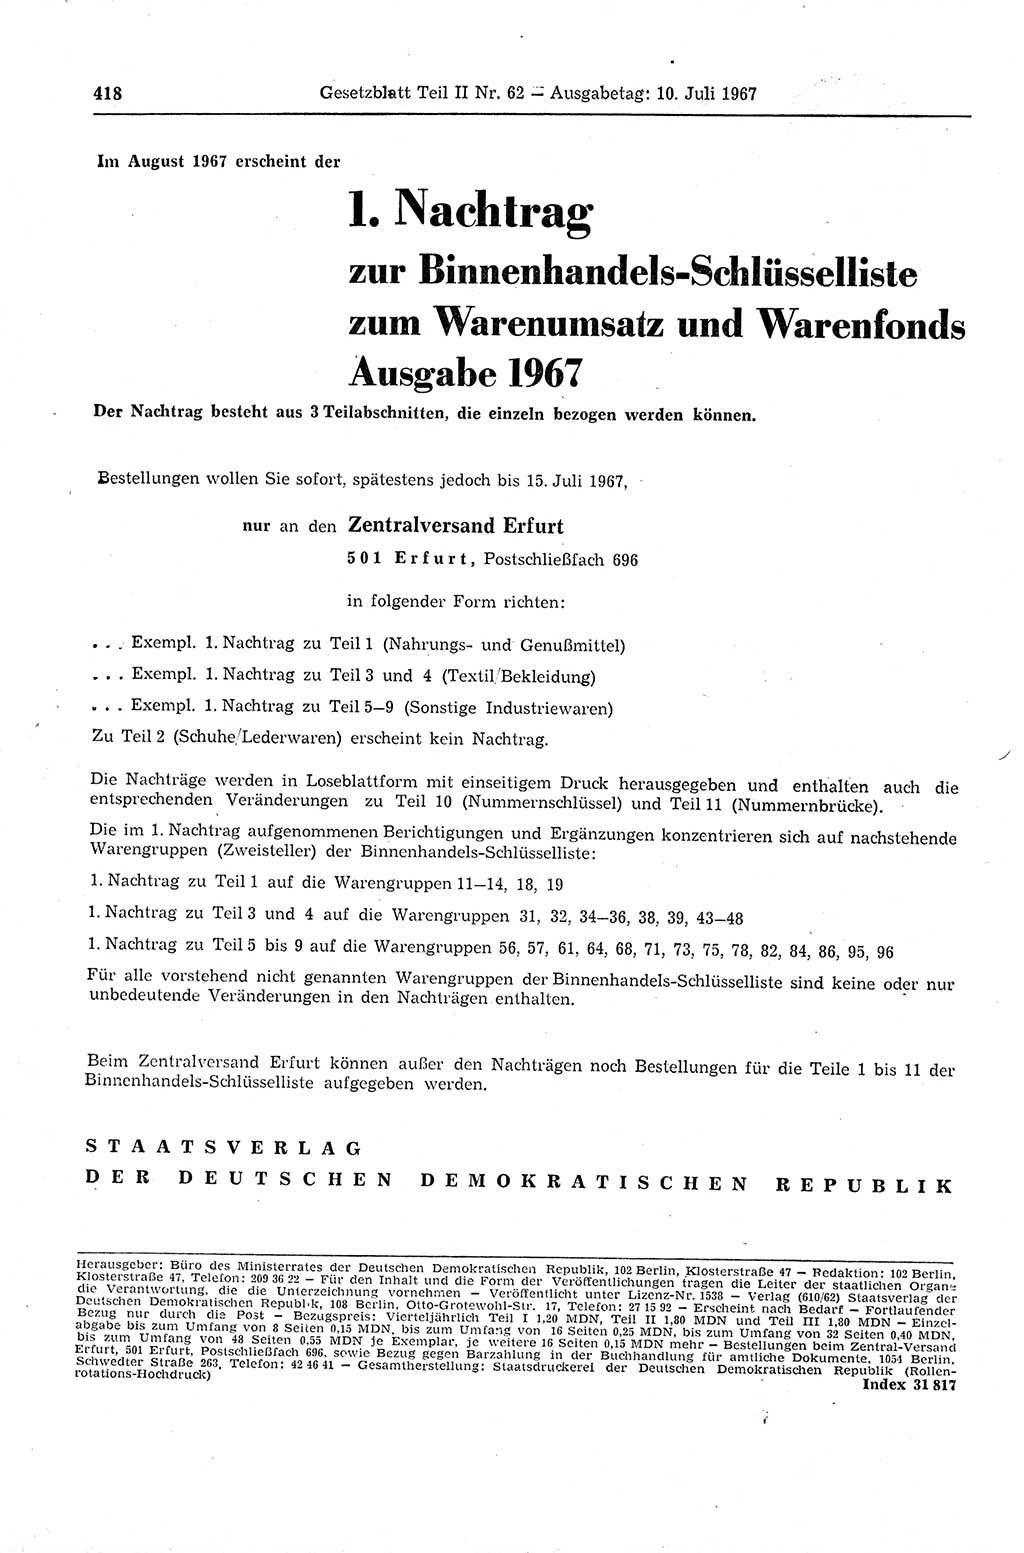 Gesetzblatt (GBl.) der Deutschen Demokratischen Republik (DDR) Teil ⅠⅠ 1967, Seite 418 (GBl. DDR ⅠⅠ 1967, S. 418)